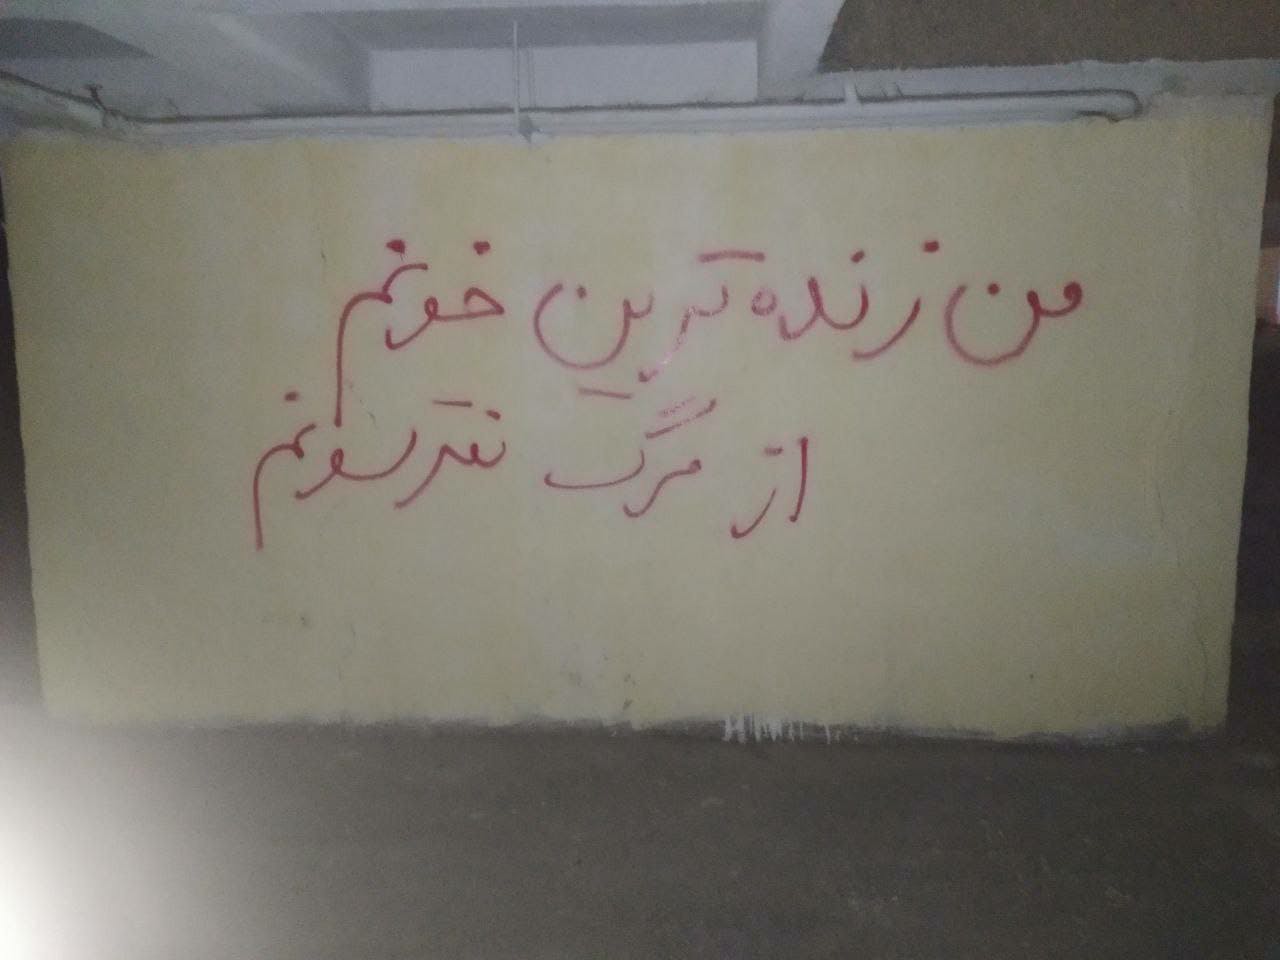 دیوارنویسی در حمایت از اعتراضات و علیه اعدام؛ خوابگاه سلامت دانشگاه علامه طباطبایی